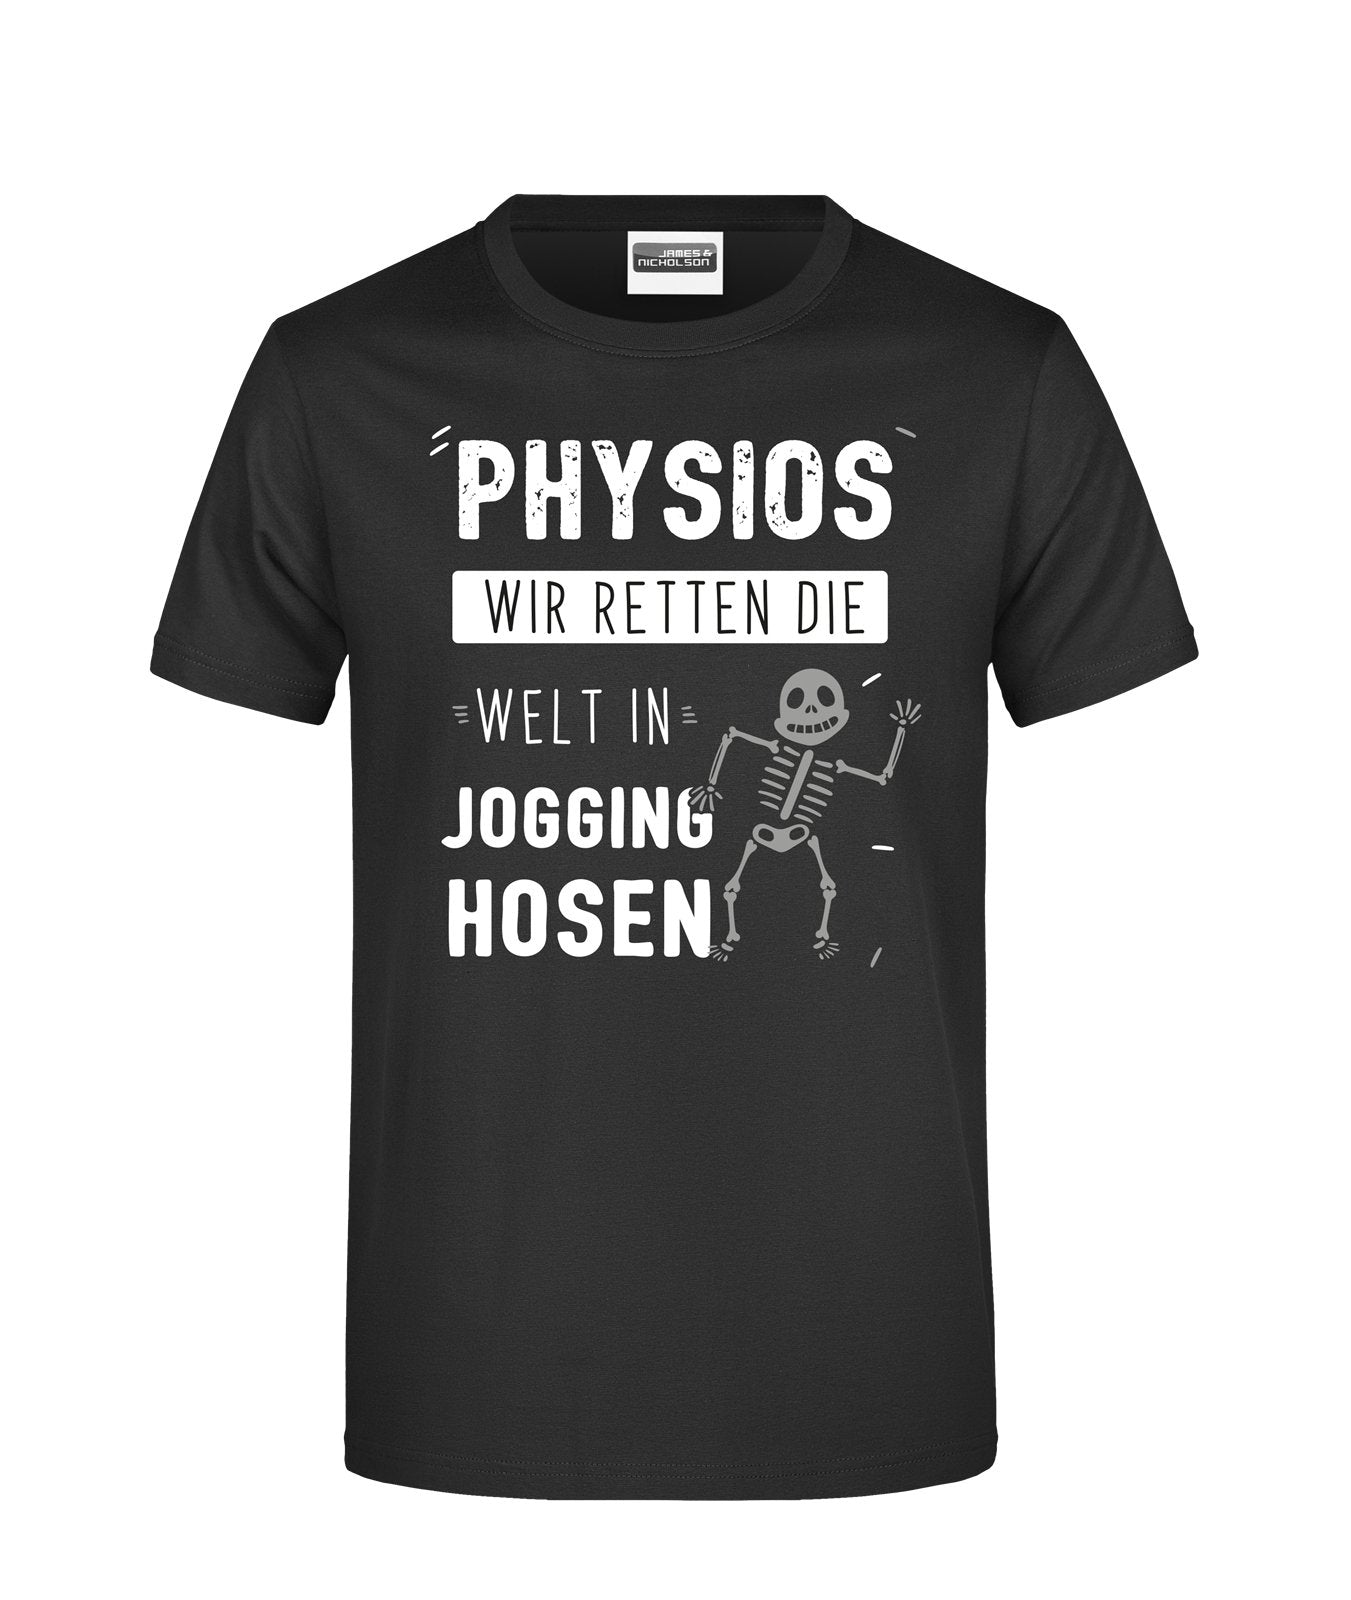 Bild: T-Shirt - Physios Wir retten de Welt in Jogging-Hosen Geschenkidee